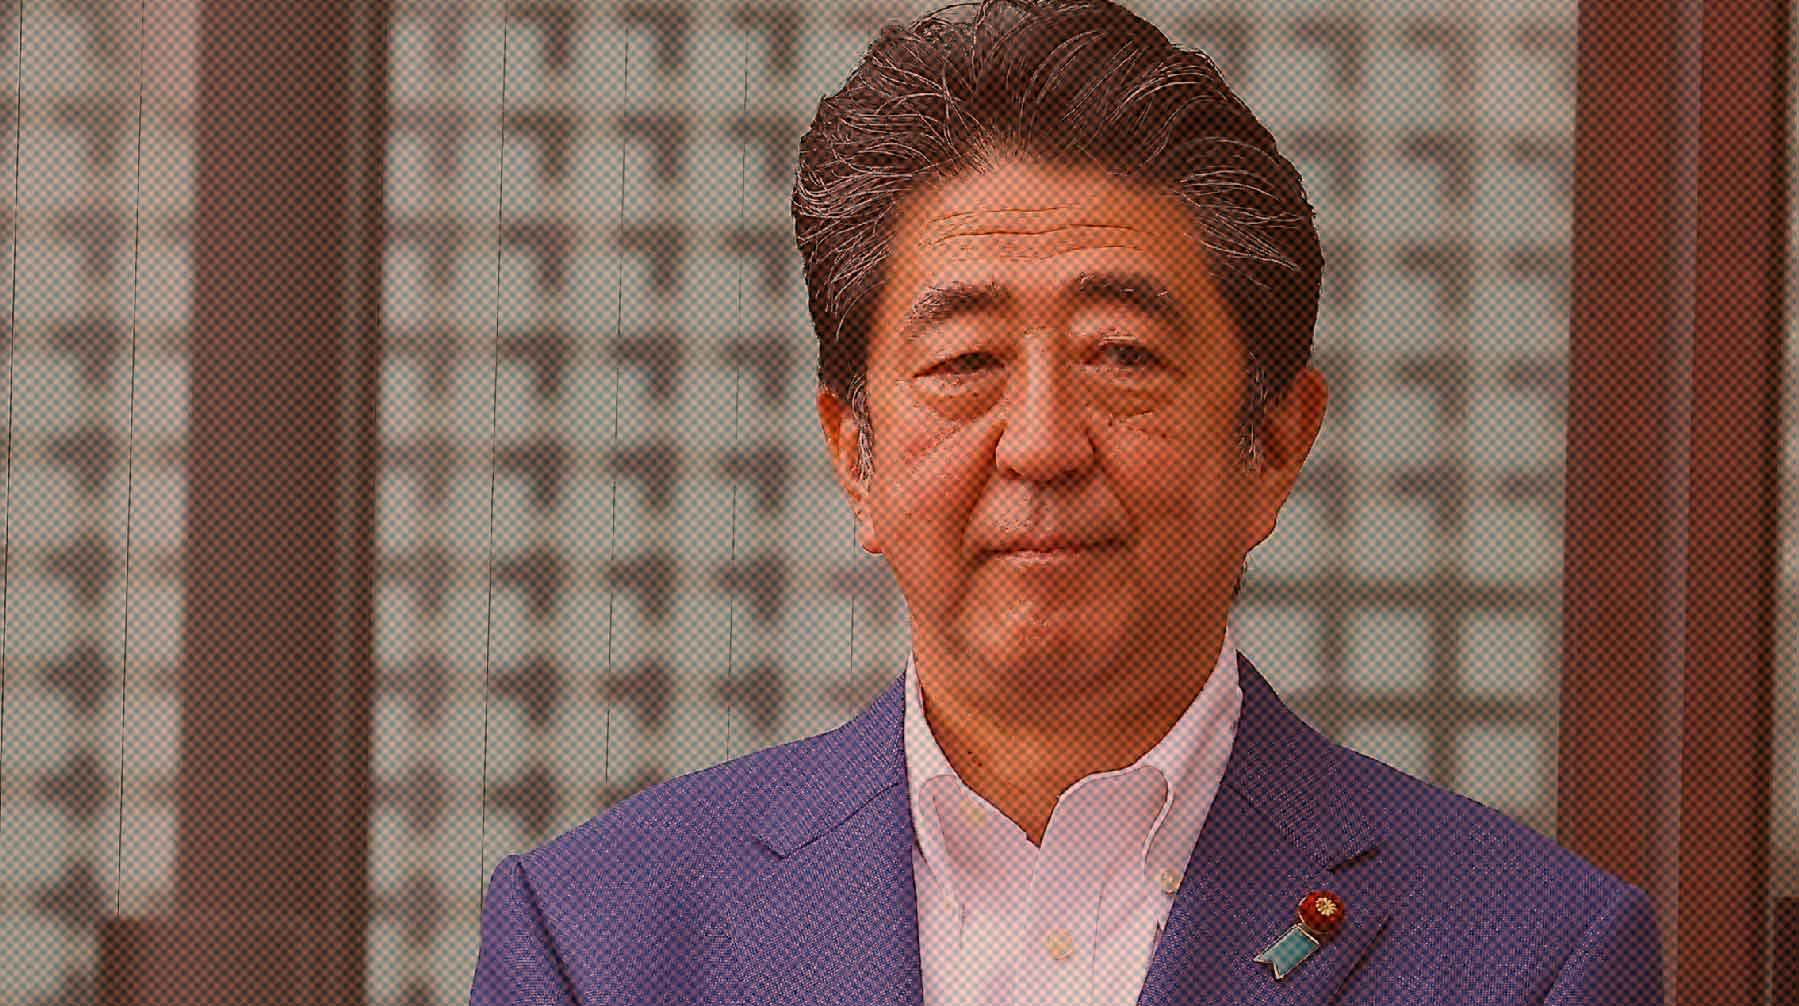 Абэ после покушения находится в критическом состоянии, сообщил глава правительства Фумио Кисида Синдзо Абэ